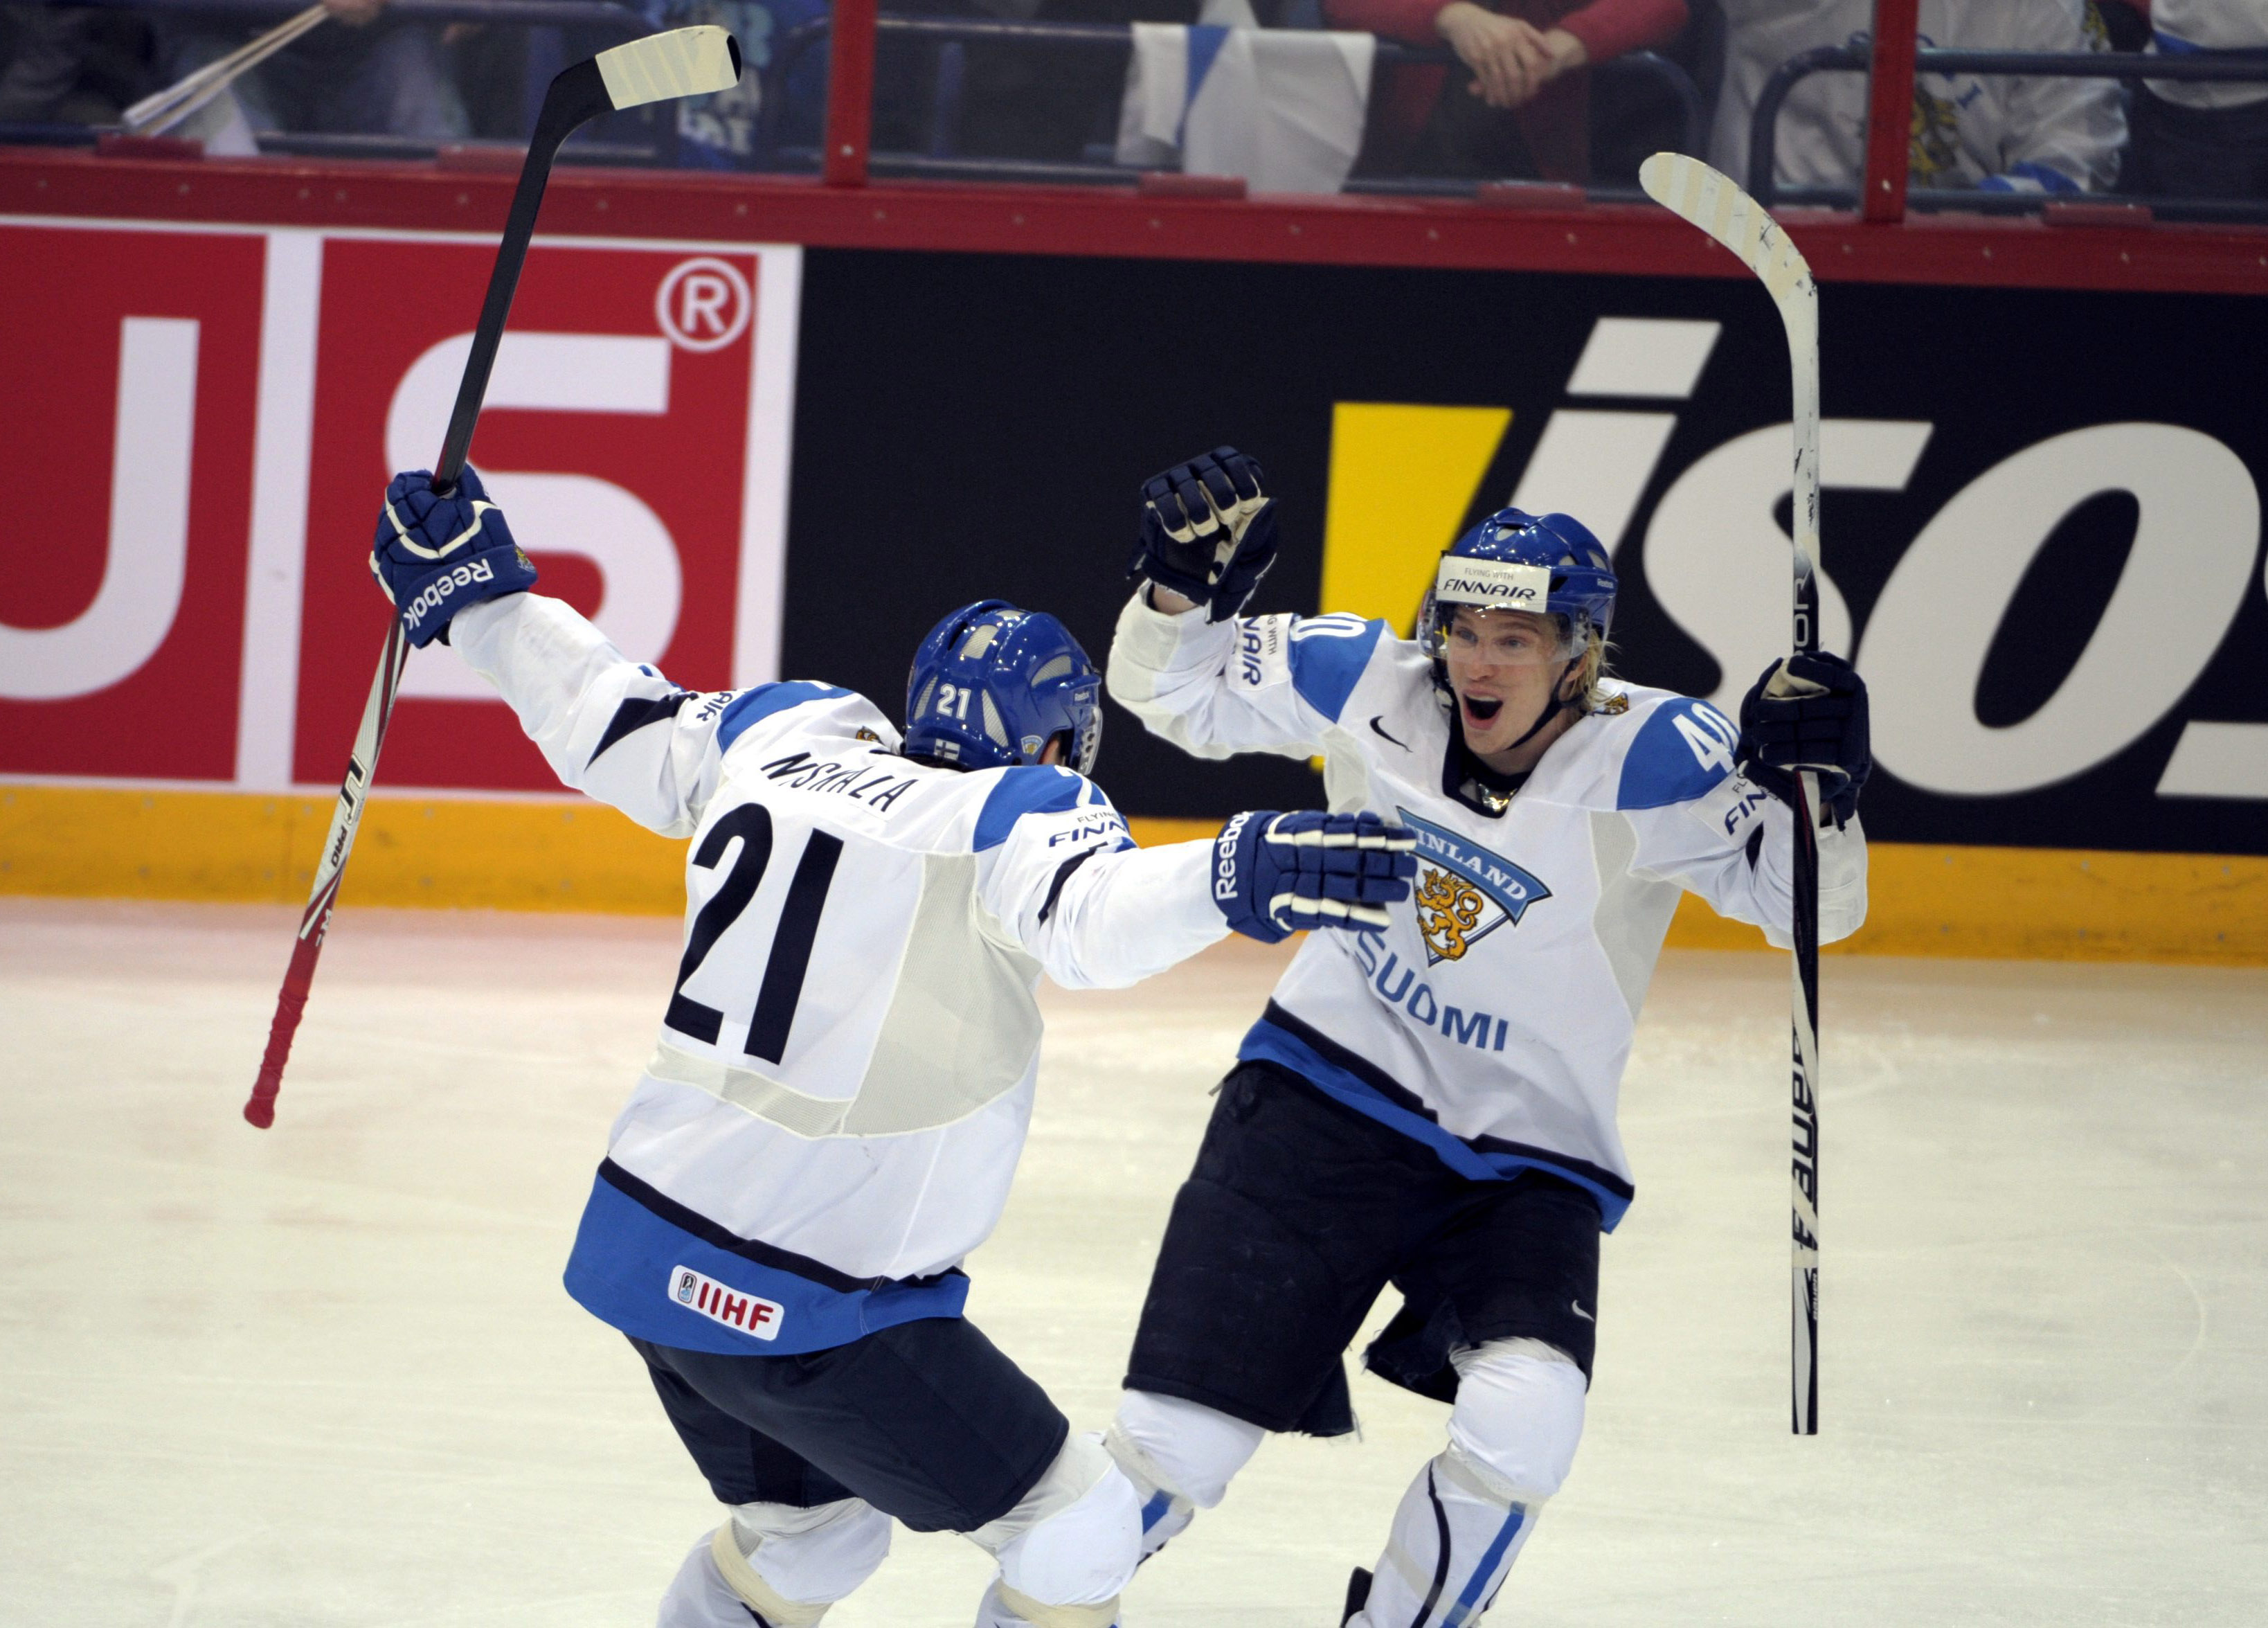 Trots att Janne Niskala gjorde 1–0 tidigt för finnarna var de chanslösa.